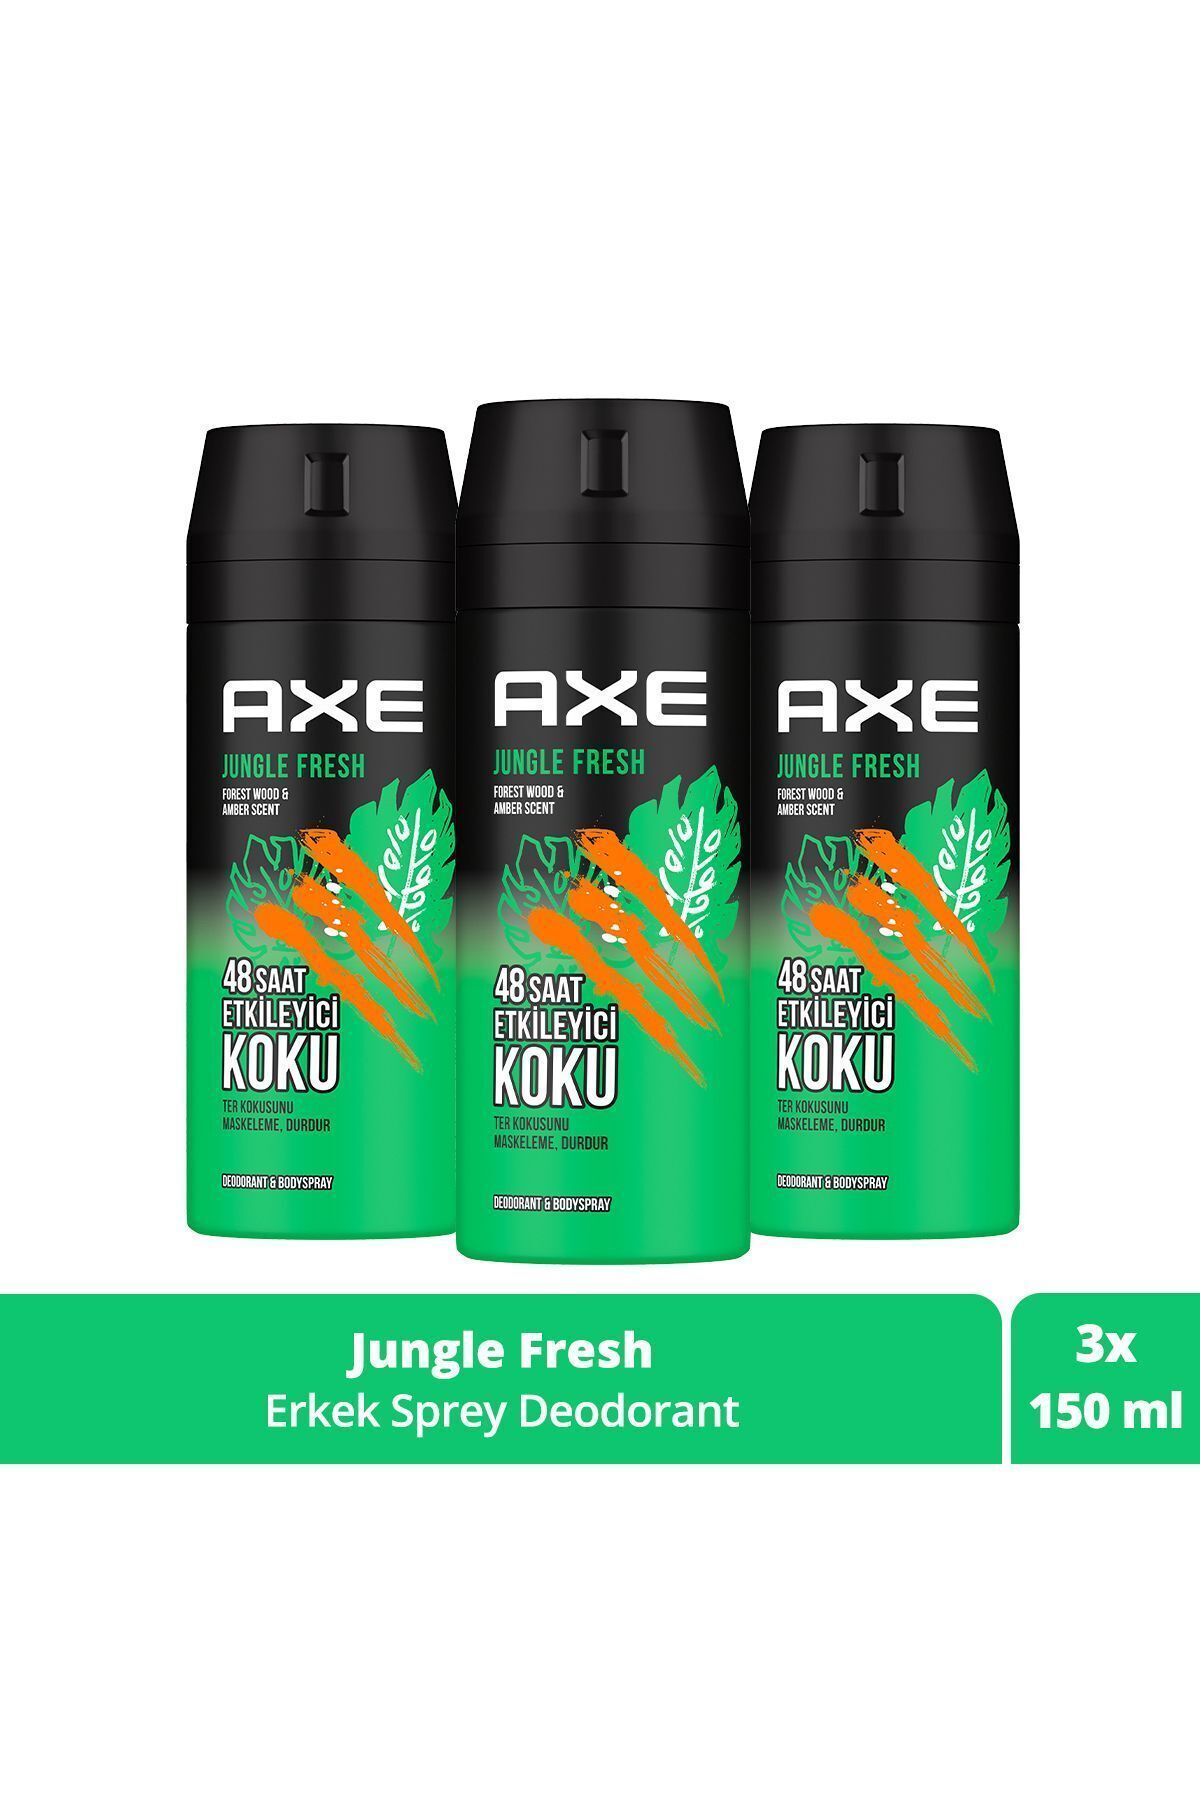 Axe Erkek Sprey Deodorant Jungle Fresh 48 Saat Etkileyici Koku 150 ml X3 Adet SET.UNİ.3825